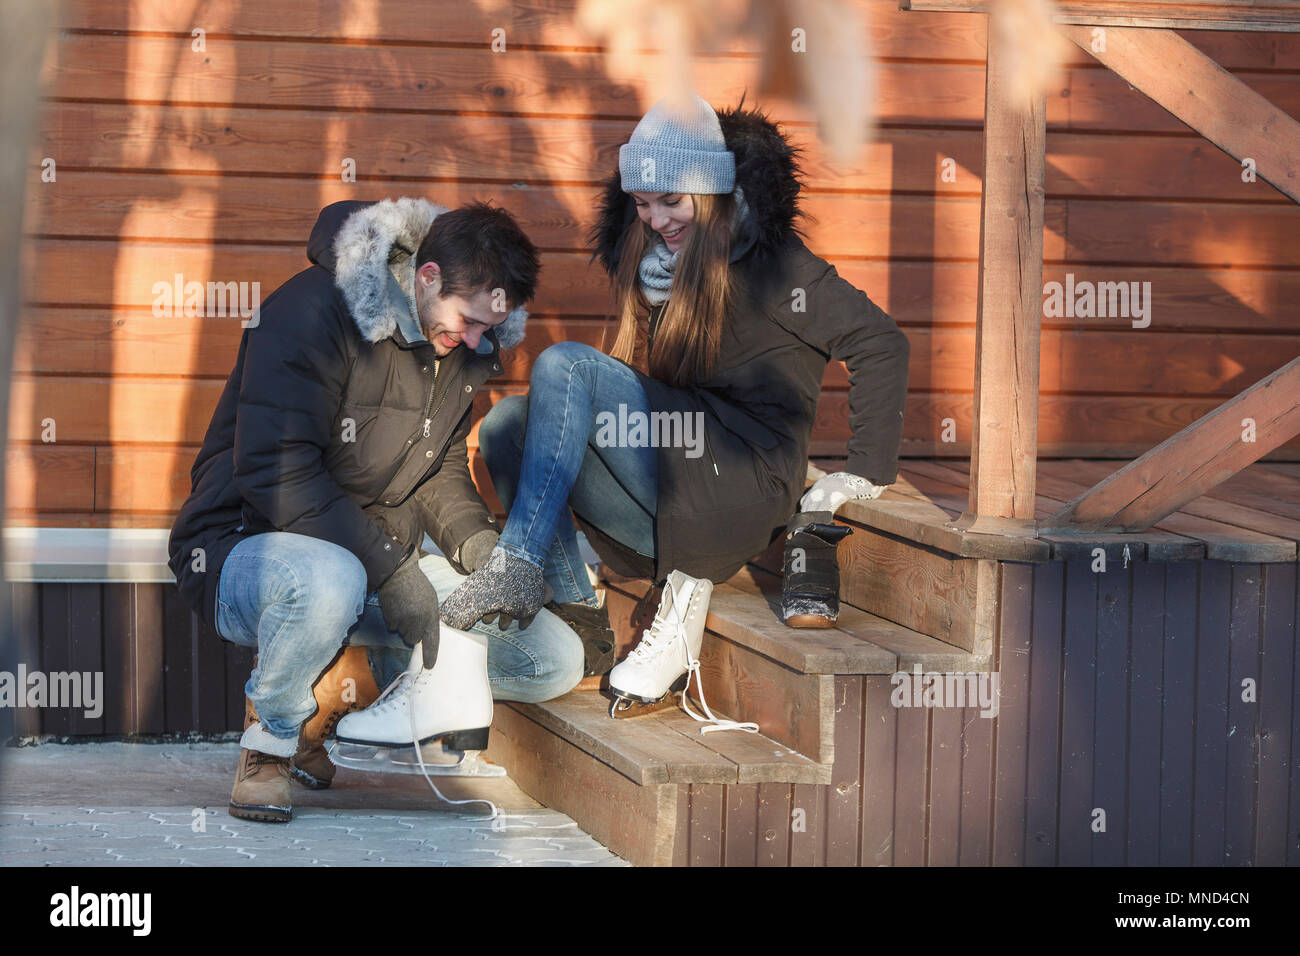 L'uomo accovacciato mentre assistono donna felice in indossando pattini da ghiaccio sulle fasi Foto Stock